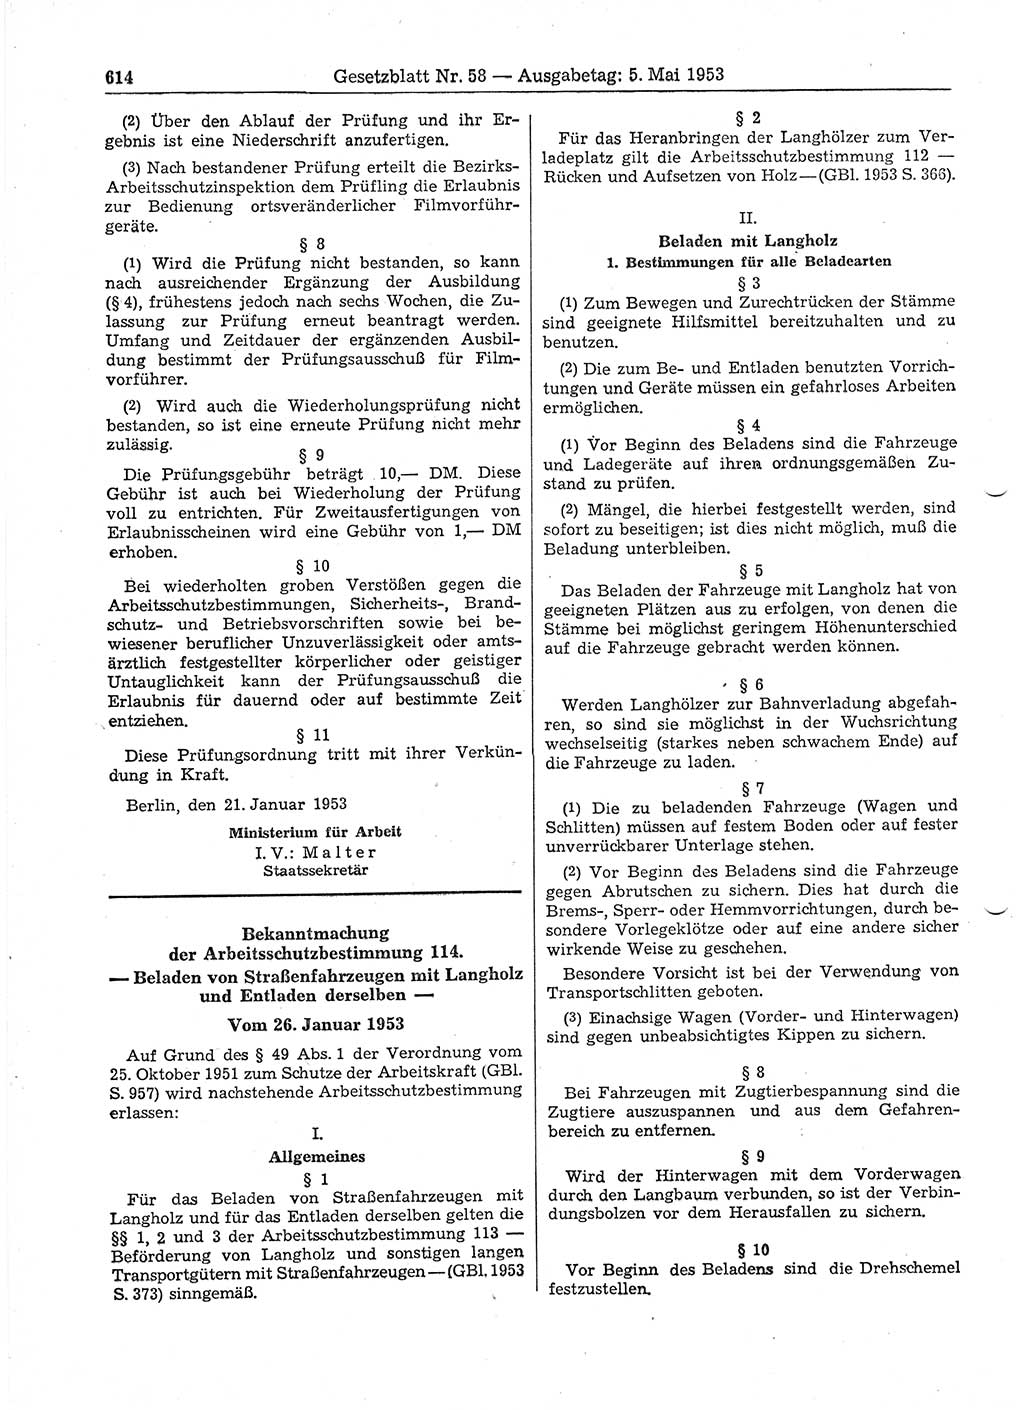 Gesetzblatt (GBl.) der Deutschen Demokratischen Republik (DDR) 1953, Seite 614 (GBl. DDR 1953, S. 614)